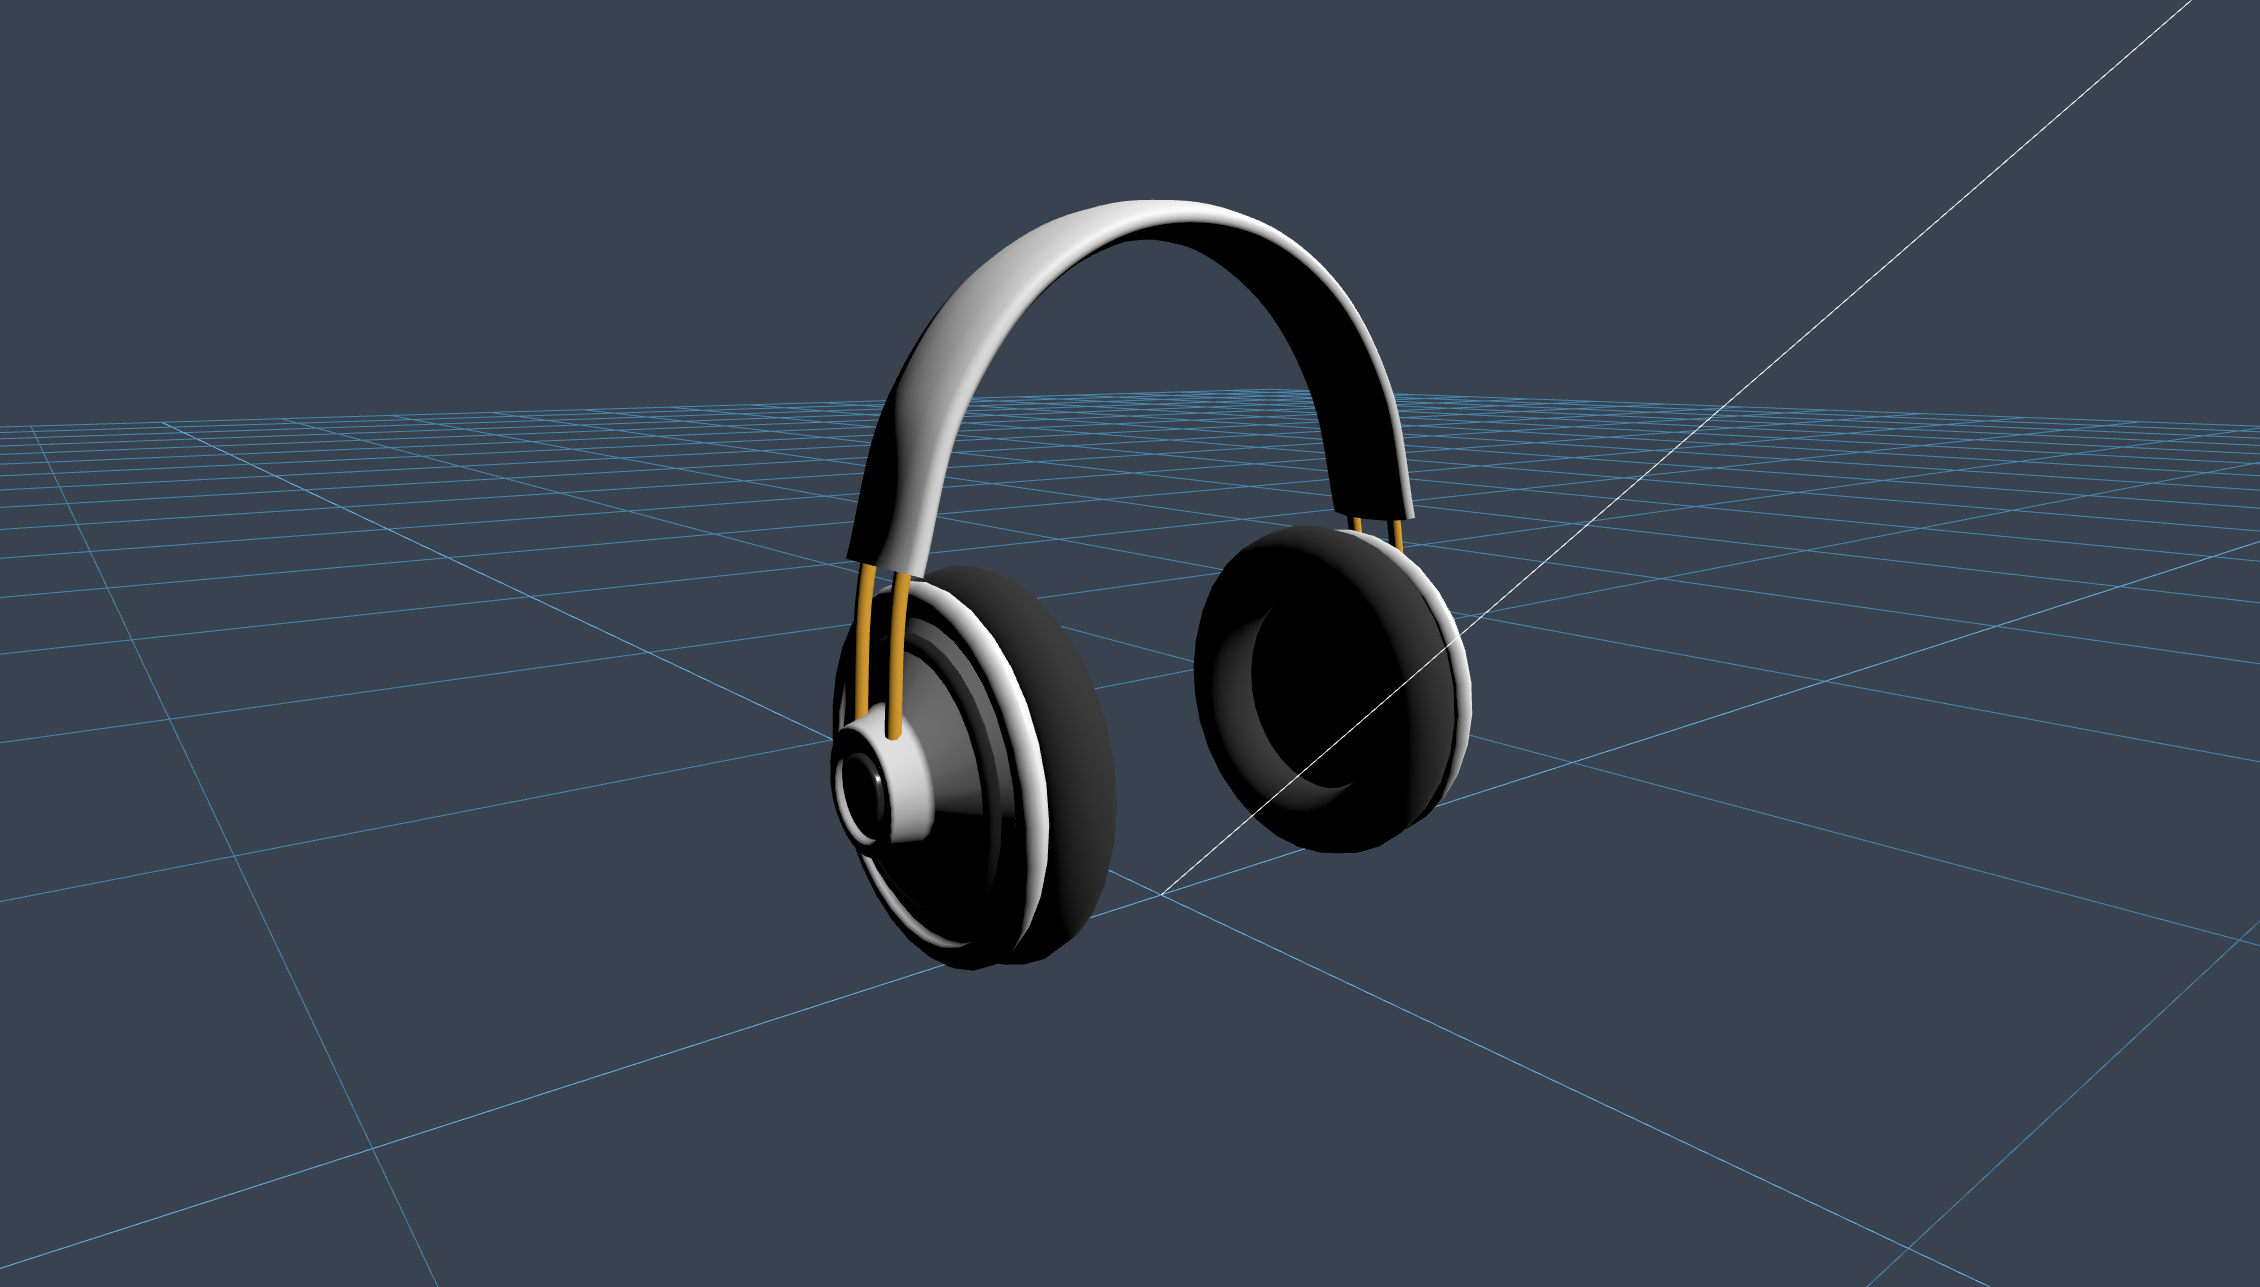 Headphones - tarafından oluşturulmuştur Niilo Korppi 3D ile